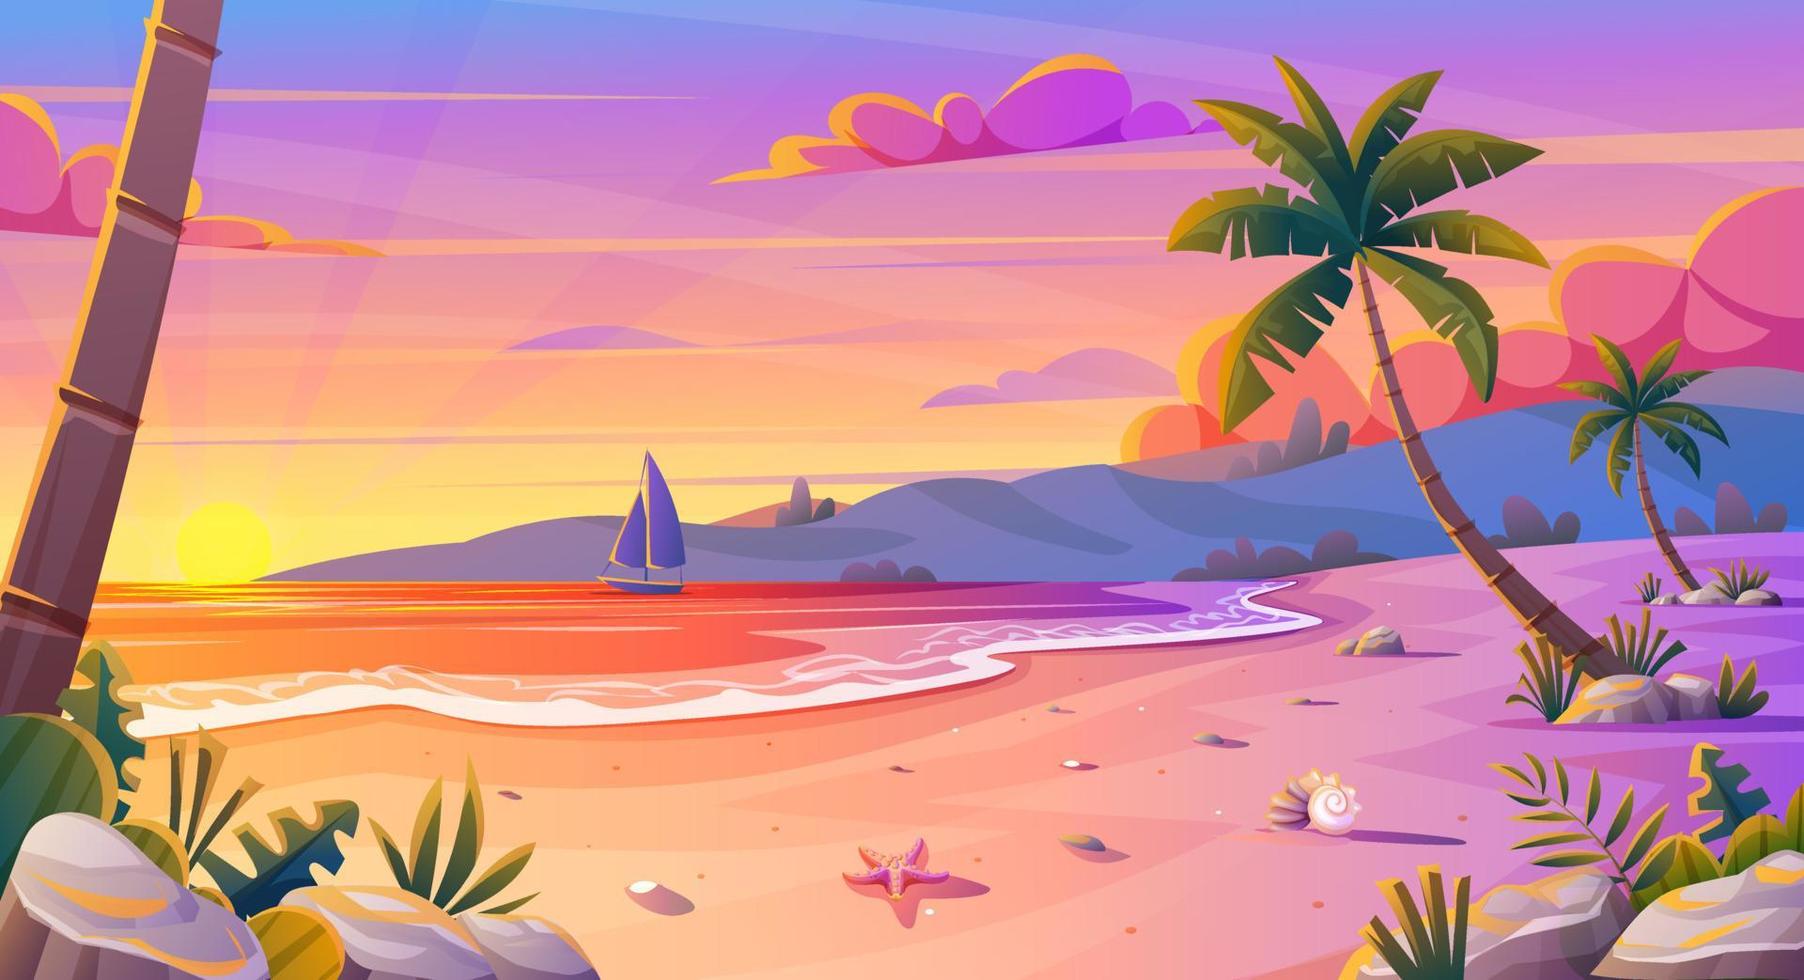 zonsondergang of zonsopgang op het strandlandschap met mooie roze hemel en zonbezinning over het water. zomervakantie achtergrond cartoon concept vector